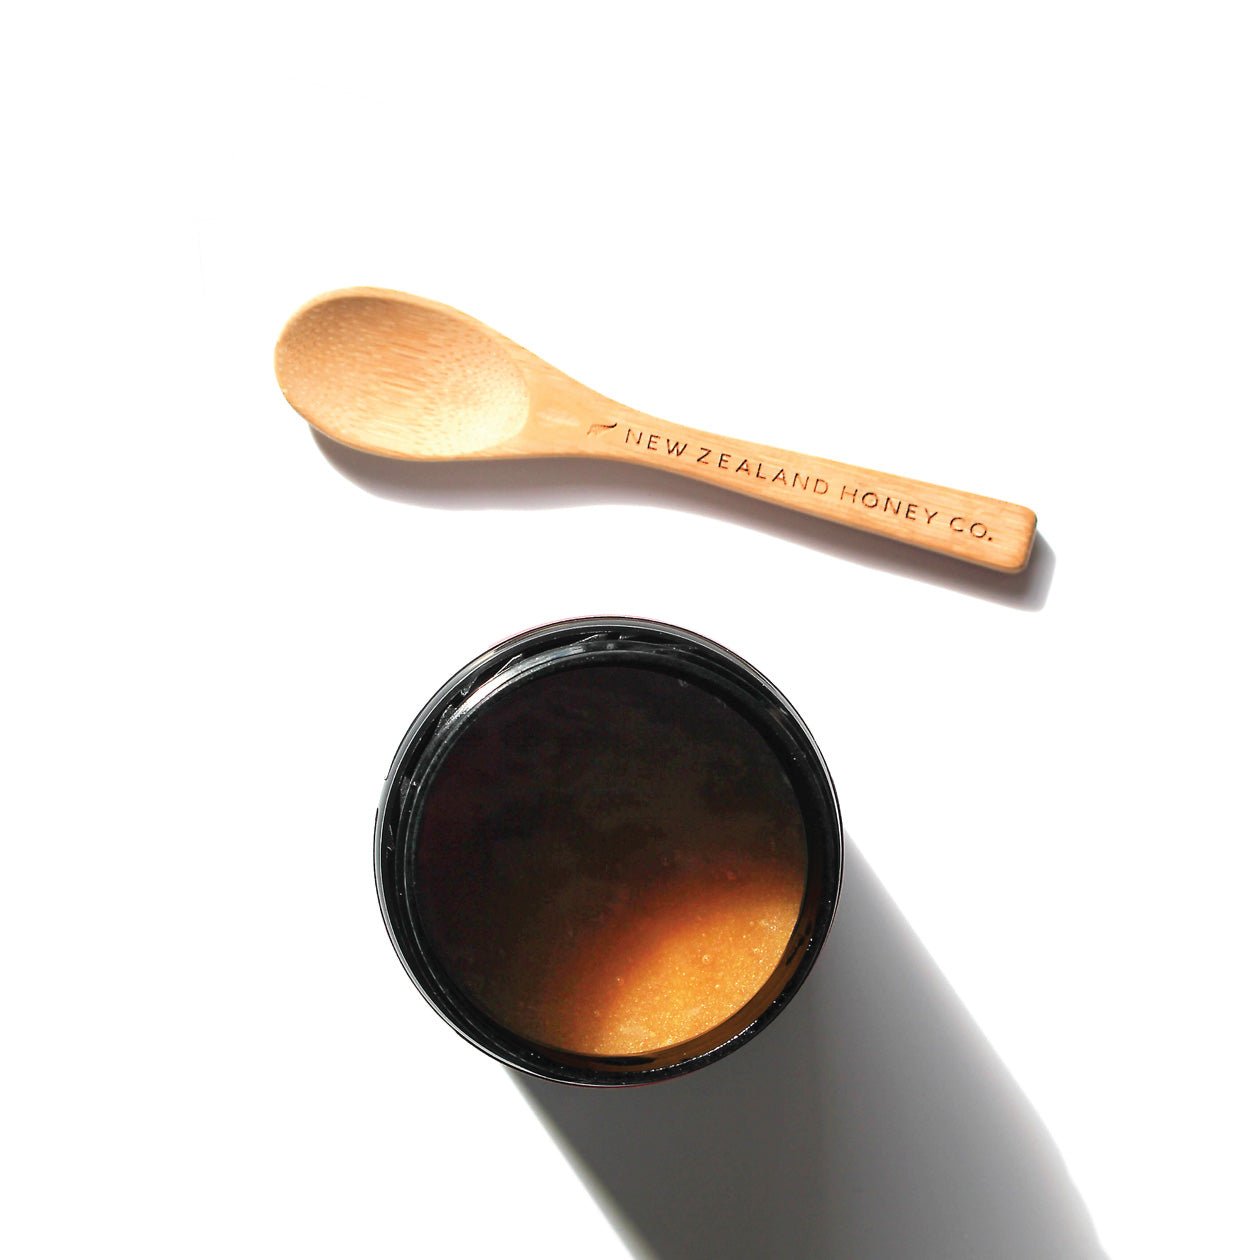 New Zealand Honey Co. Daily Spoon